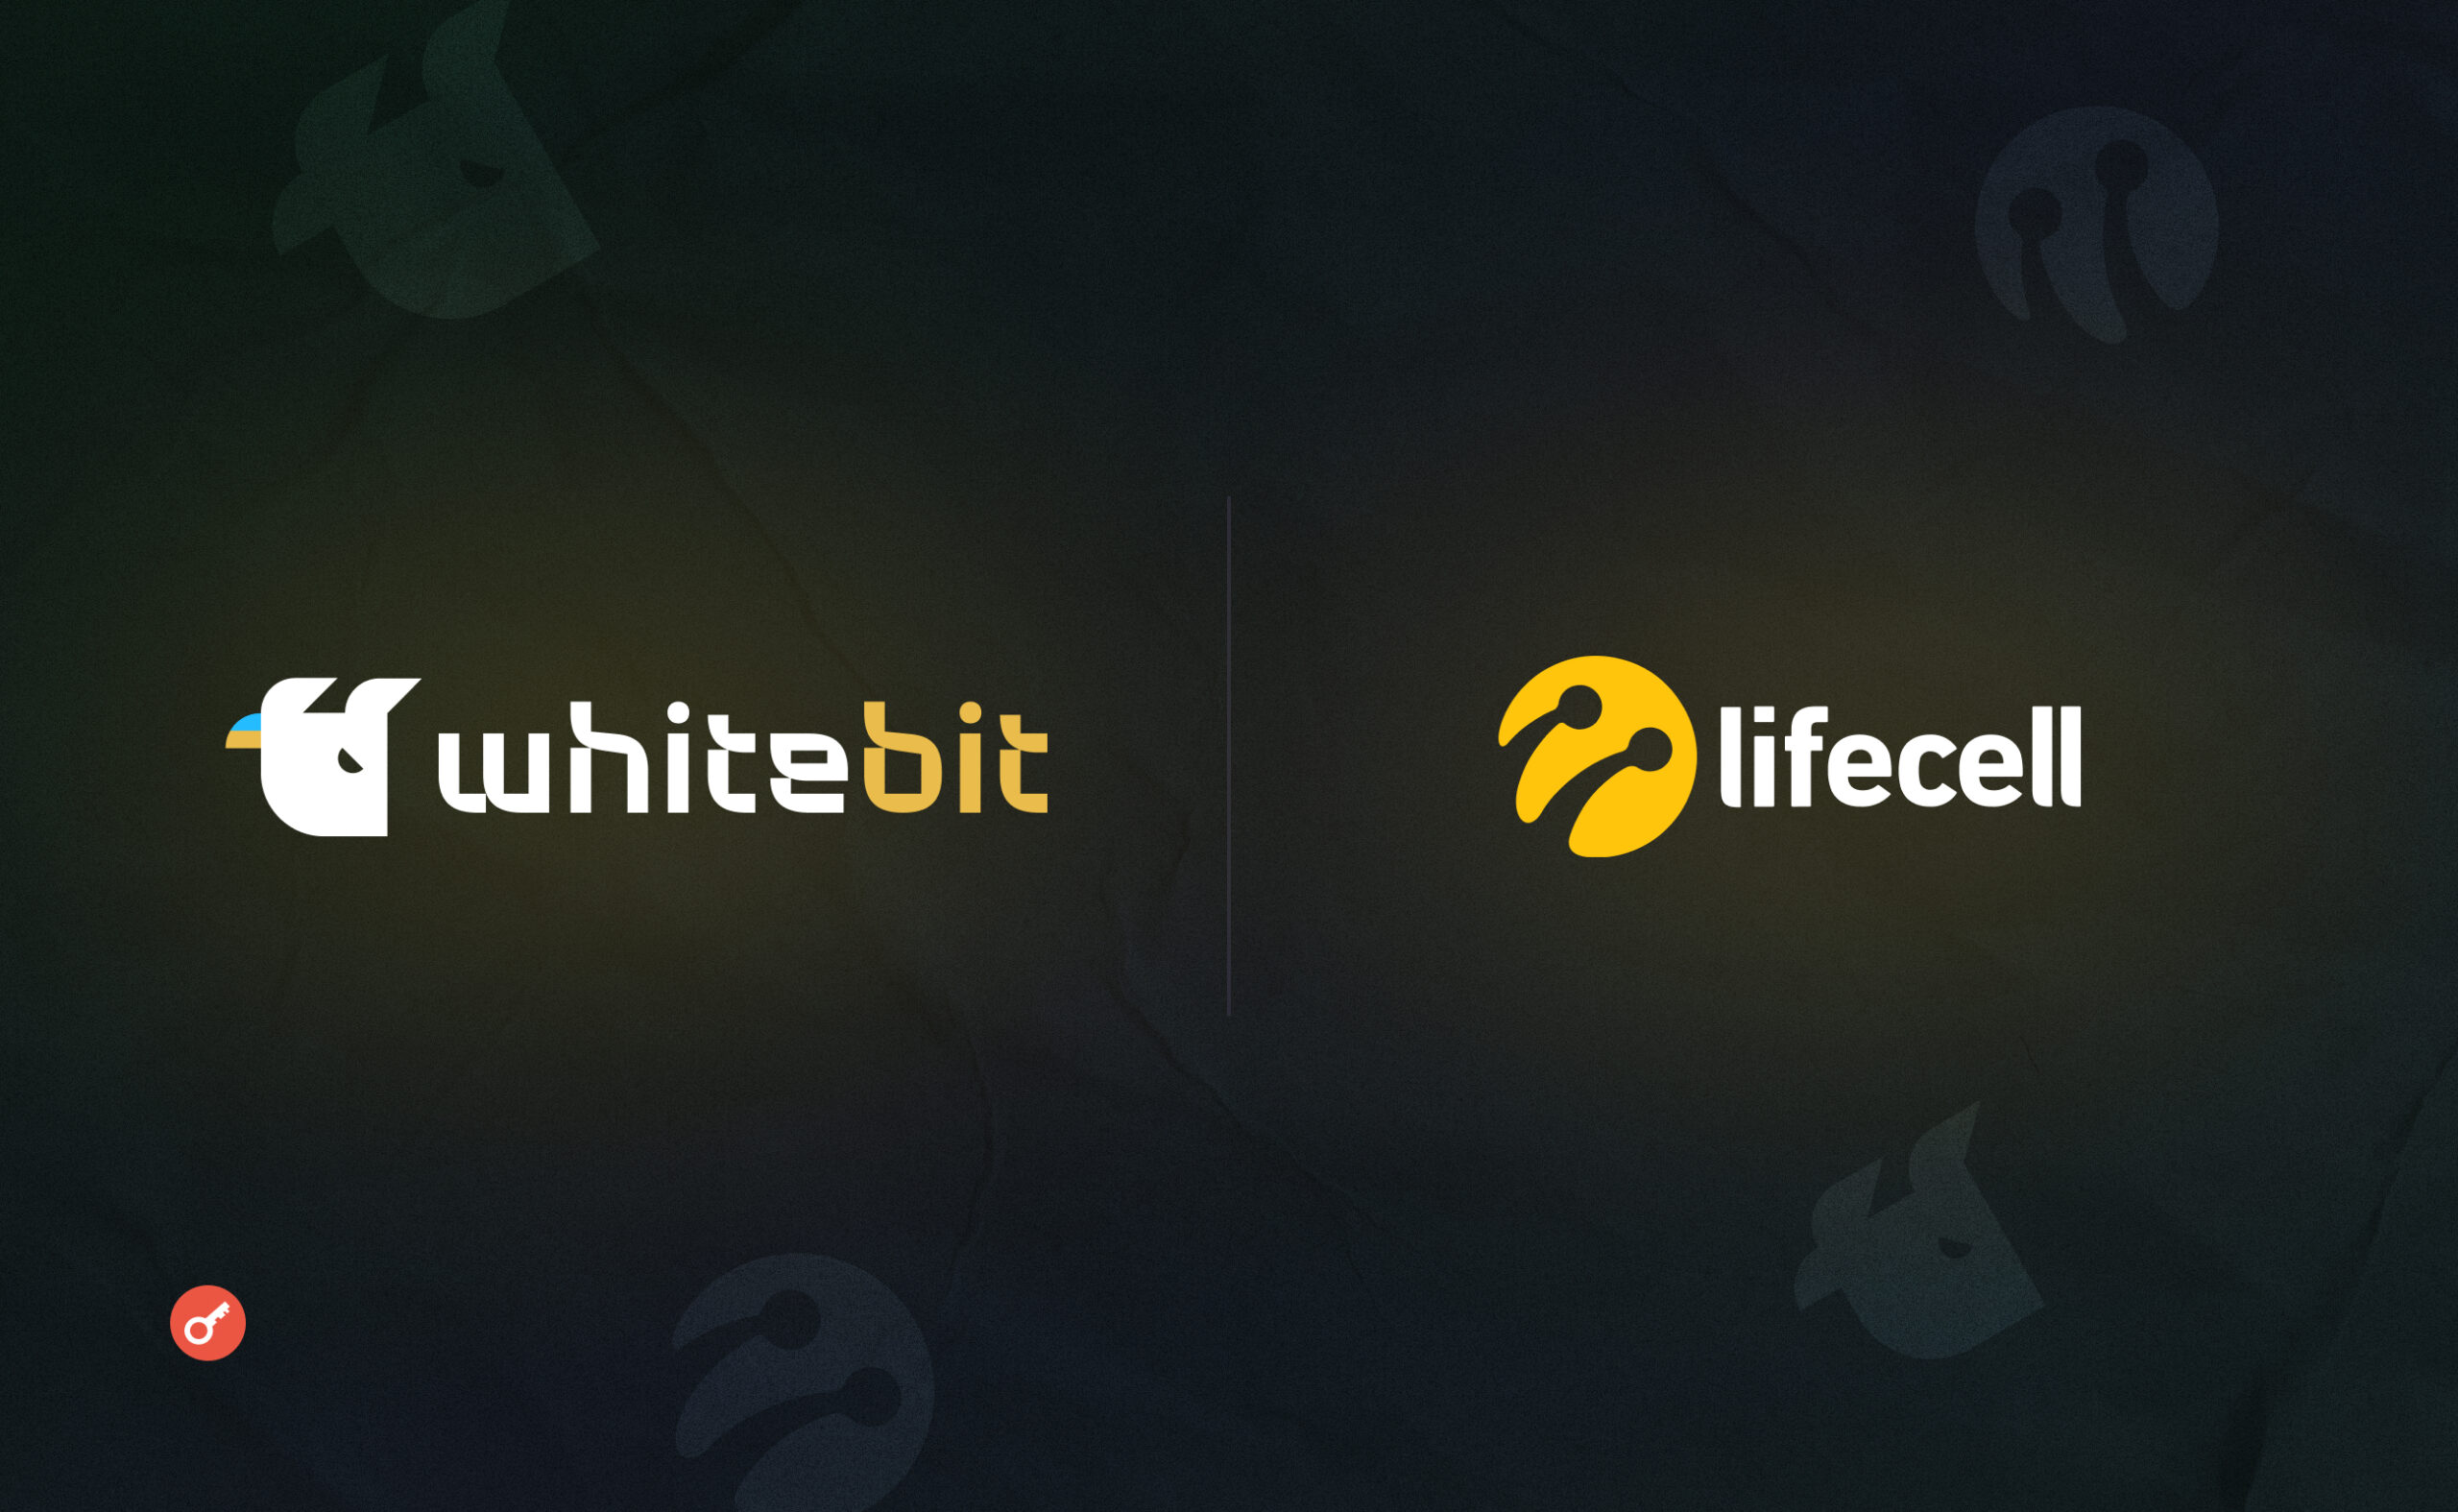 WhiteBIT та lifecell надають можливість здійснювати криптооперації без доступу до інтернету. Головний колаж новини.